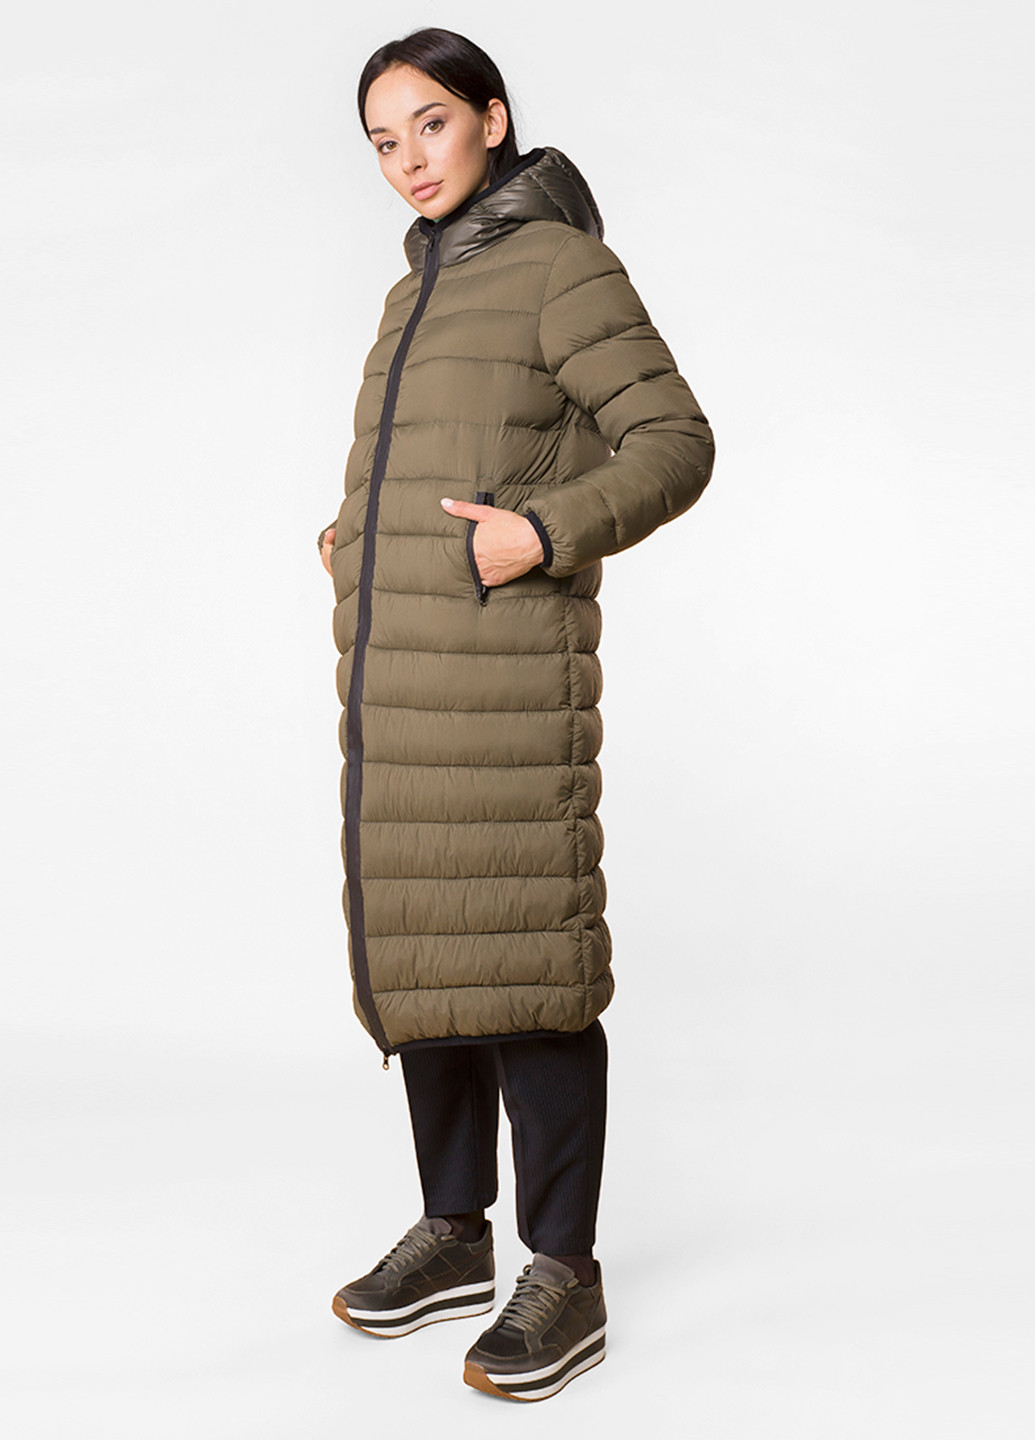 Оливковая (хаки) зимняя куртка MR 520